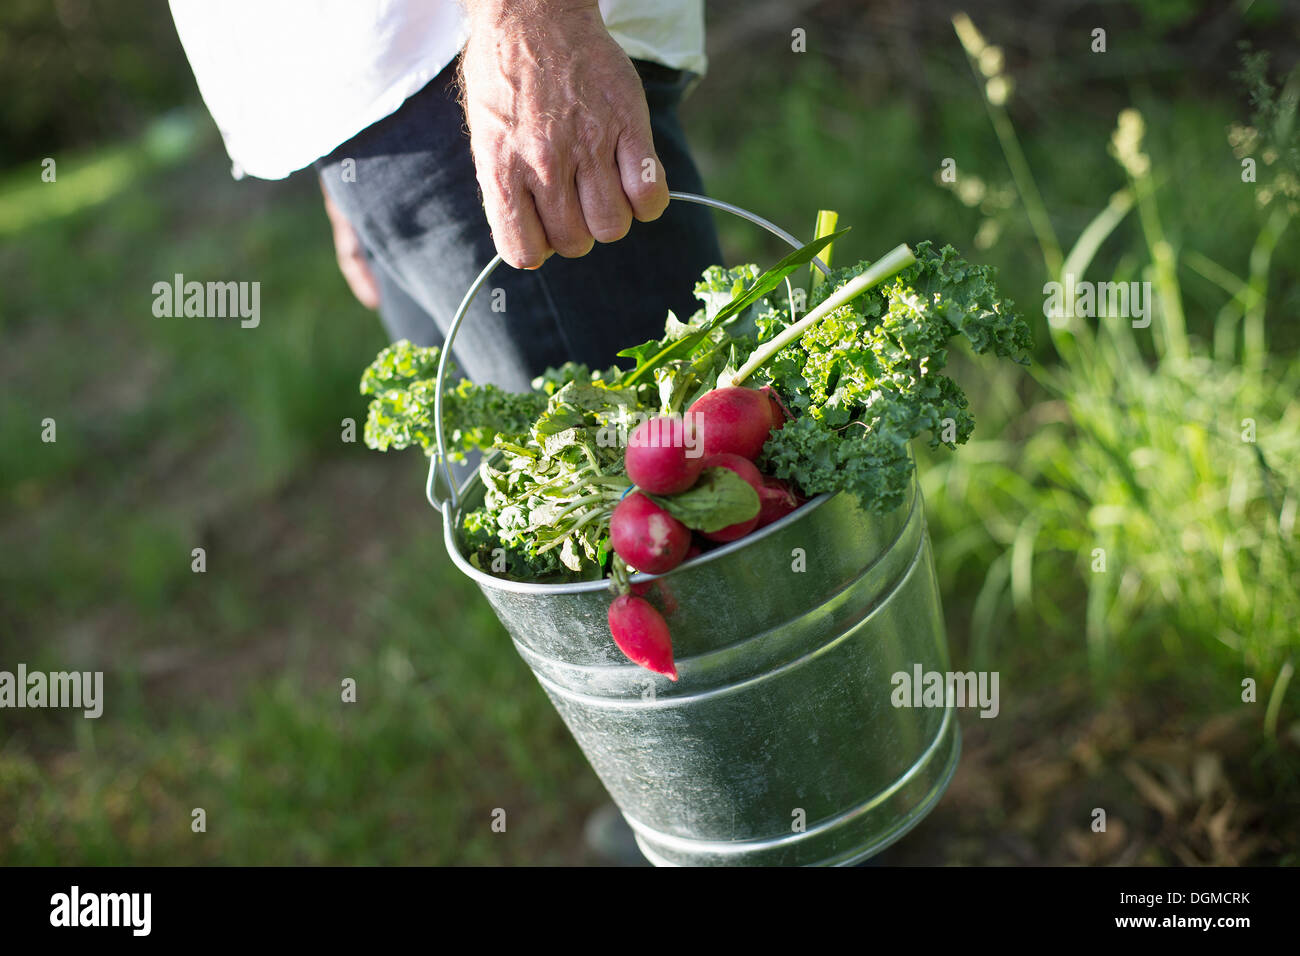 Granja orgánica. Fiesta de verano. Un hombre llevando un cubo de metal cosechada ensalada de hojas, hierbas y vegetales. Foto de stock